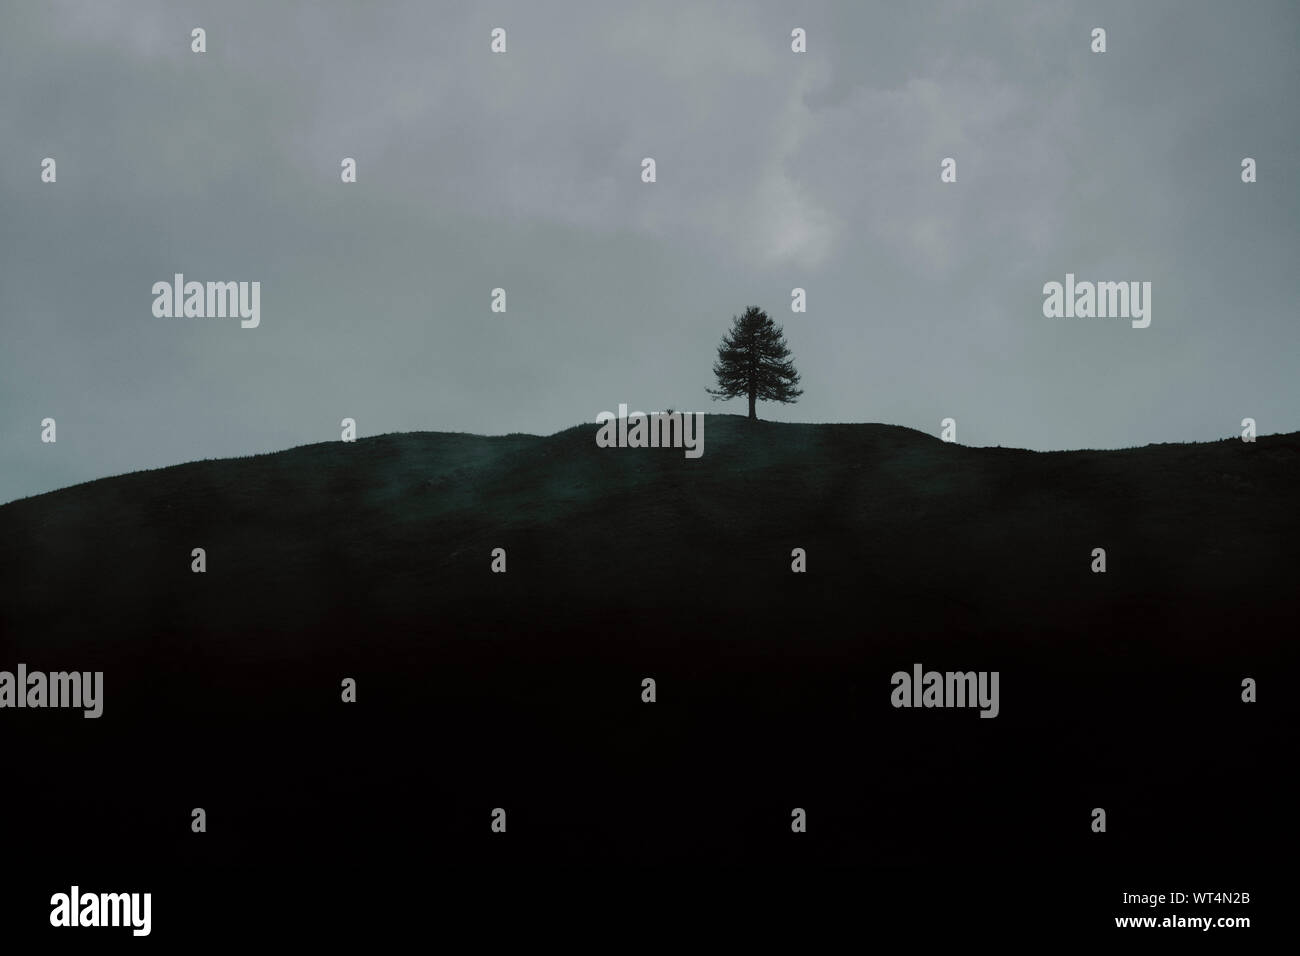 Eine minimale Single einsamer Baum hügel landschaft Horizont mit Cloud-letzte Baum stehend Stockfoto